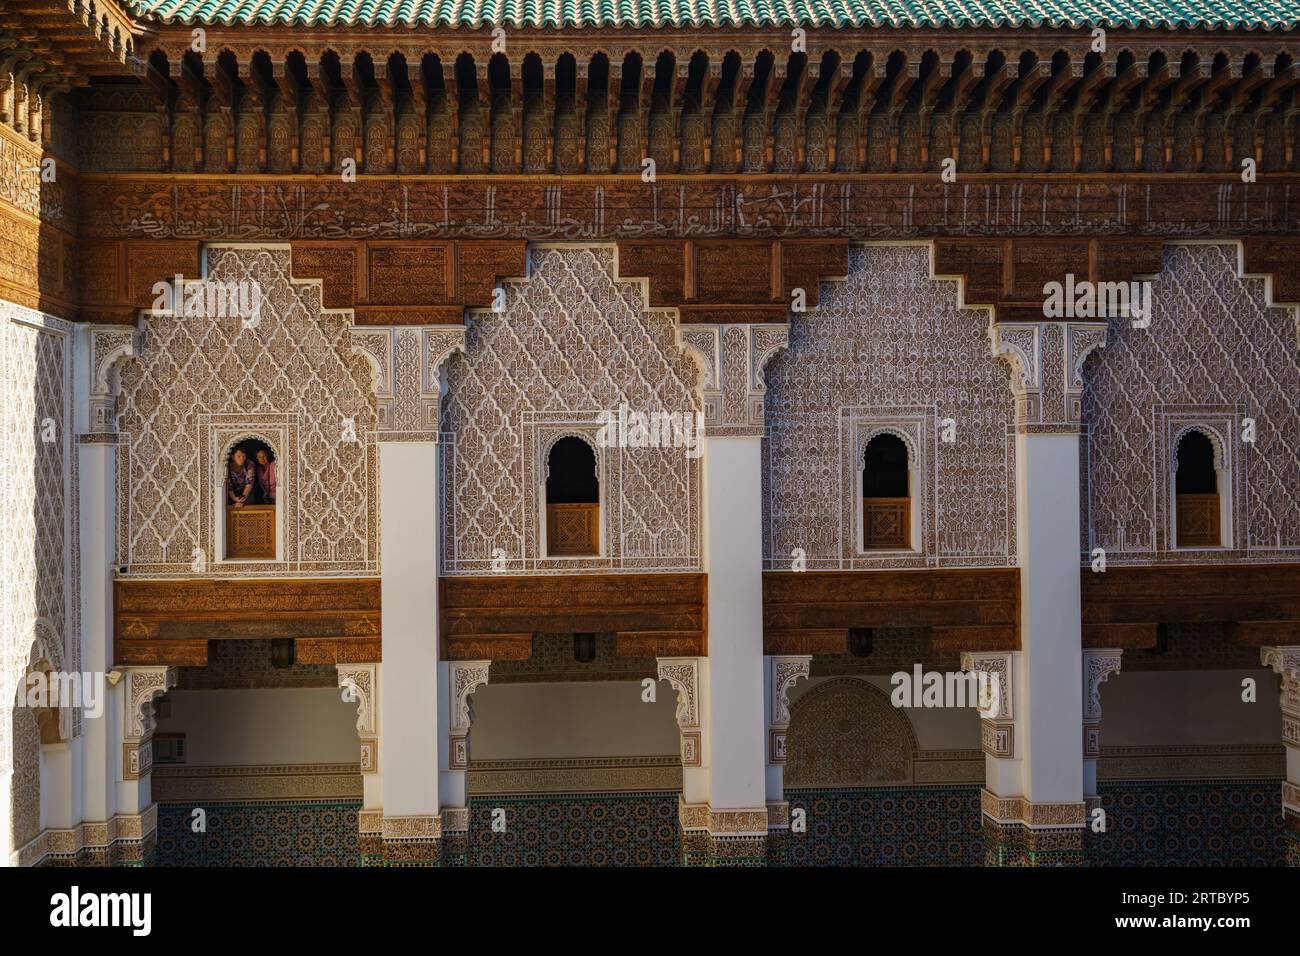 Afrique du Nord. Maroc. Marrakech. Touristes aux fenêtres de la Medersa Ben Youssef. La plus grande et la plus importante madrassa du Maroc Banque D'Images